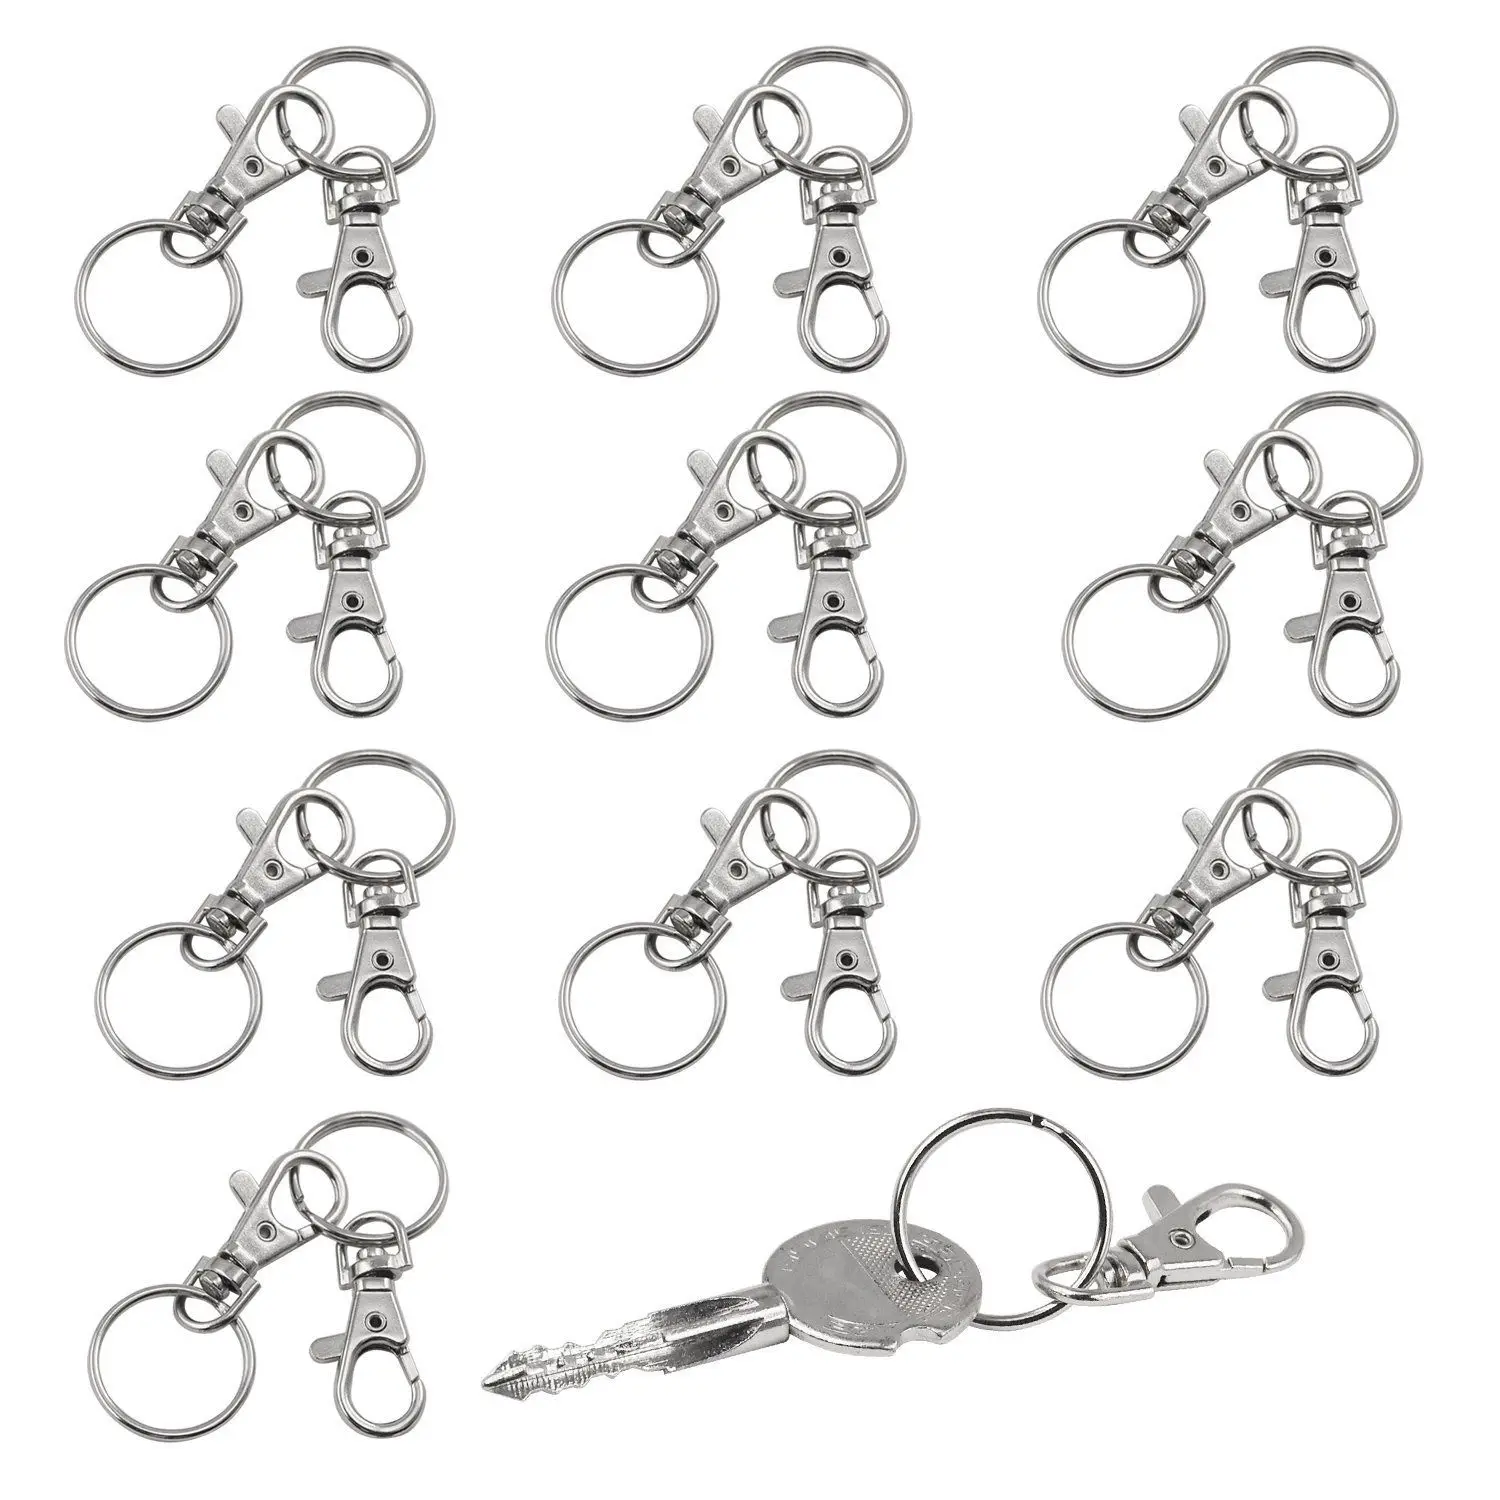 DSGS 20 небольшие съемные колпачки для ключей-Карабин брелок-косметика и ювелирные изделия